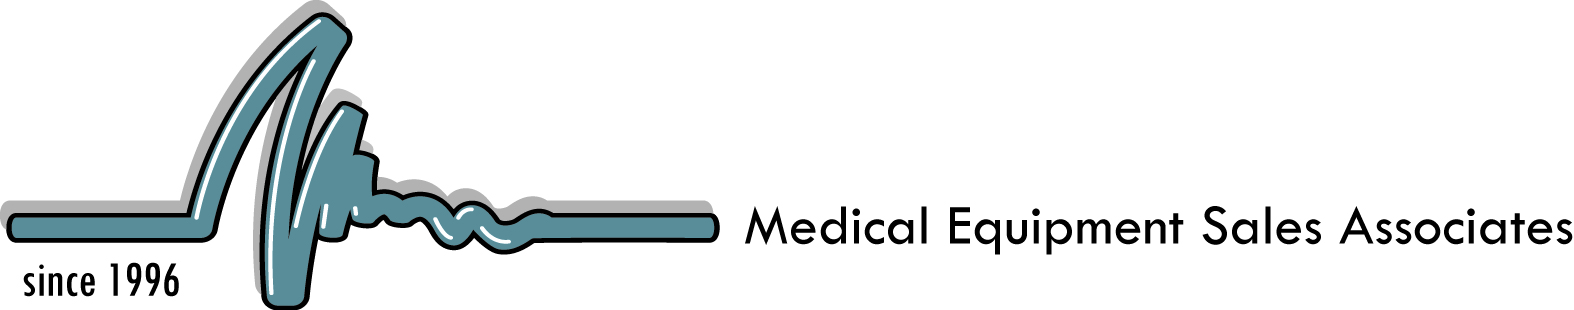 Medical Equipment Sales Associates